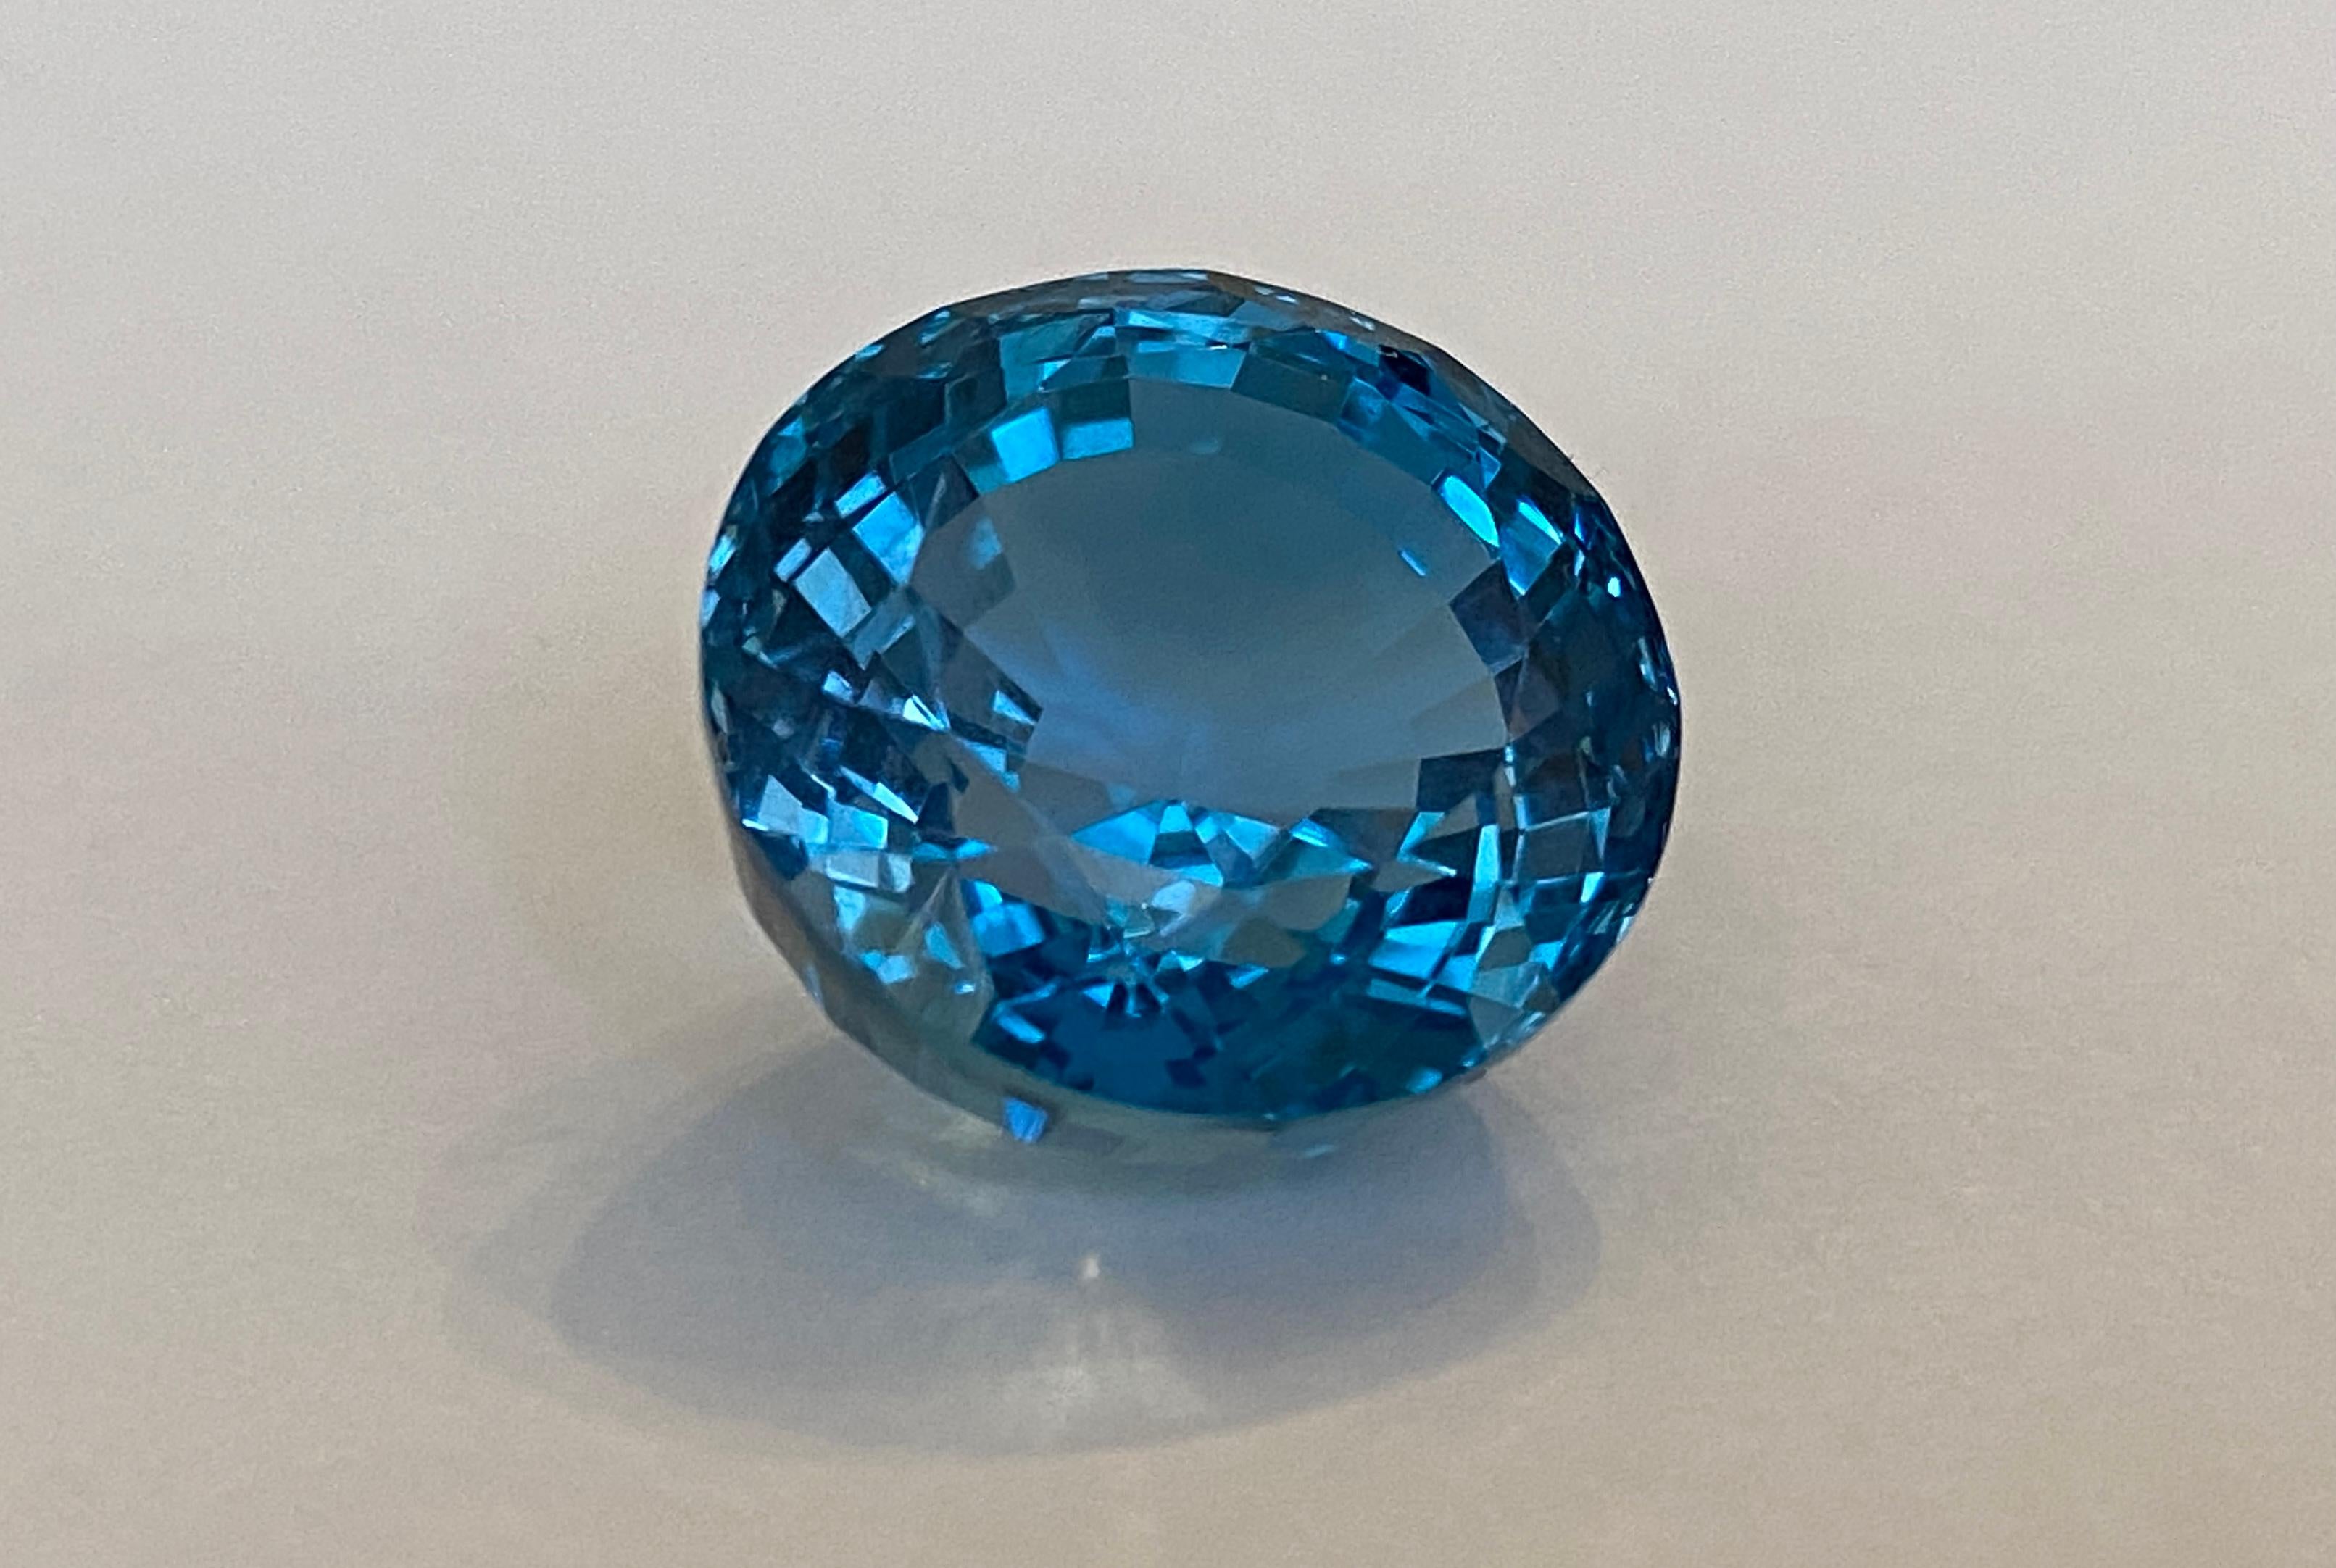  Offert  Round Mixed cut Natural Gemstone Flawless London Blue Topaz 23.05 ct.
Il s'agit d'une pierre de qualité 'AAA' et d'une pierre précieuse propre à Looping. Transparent.   Idéal pour les anneaux de  pendentif